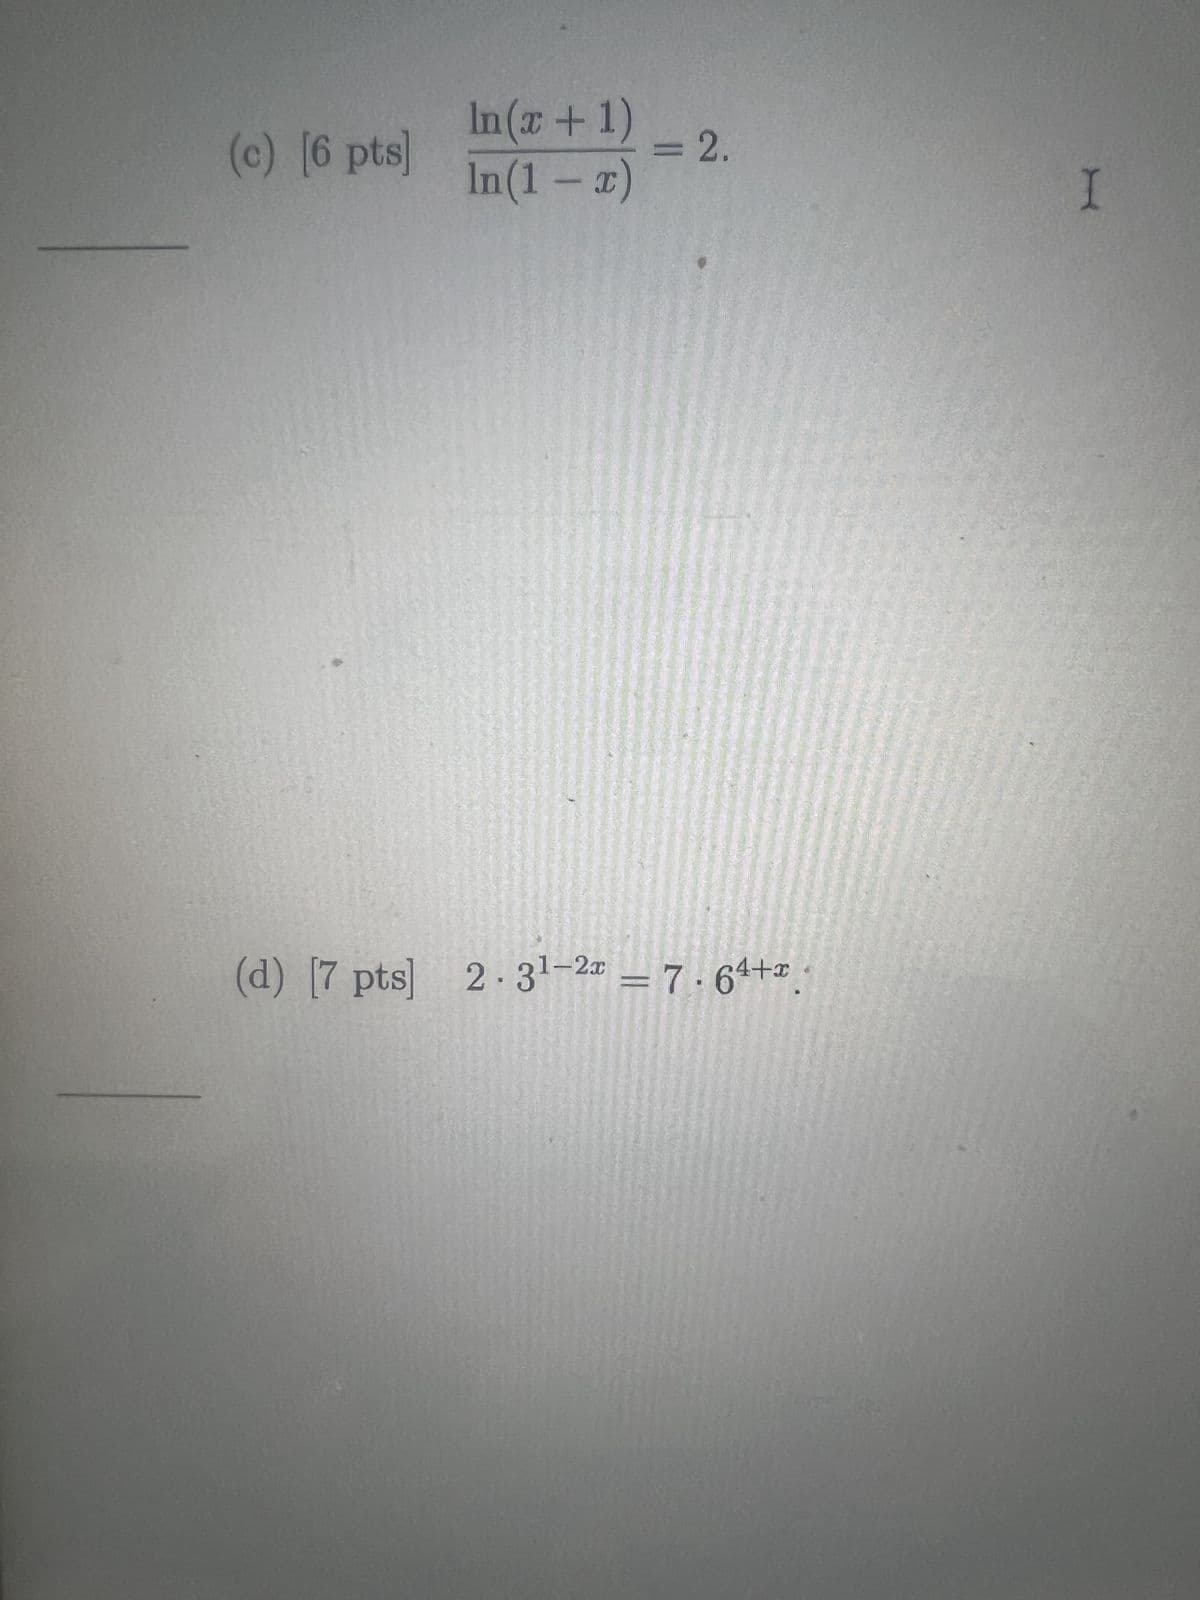 (c) [6 pts]
In(x + 1)
In(1 - x)
= 2.
I
(d) [7 pts] 2.31-2x = 7.64+x